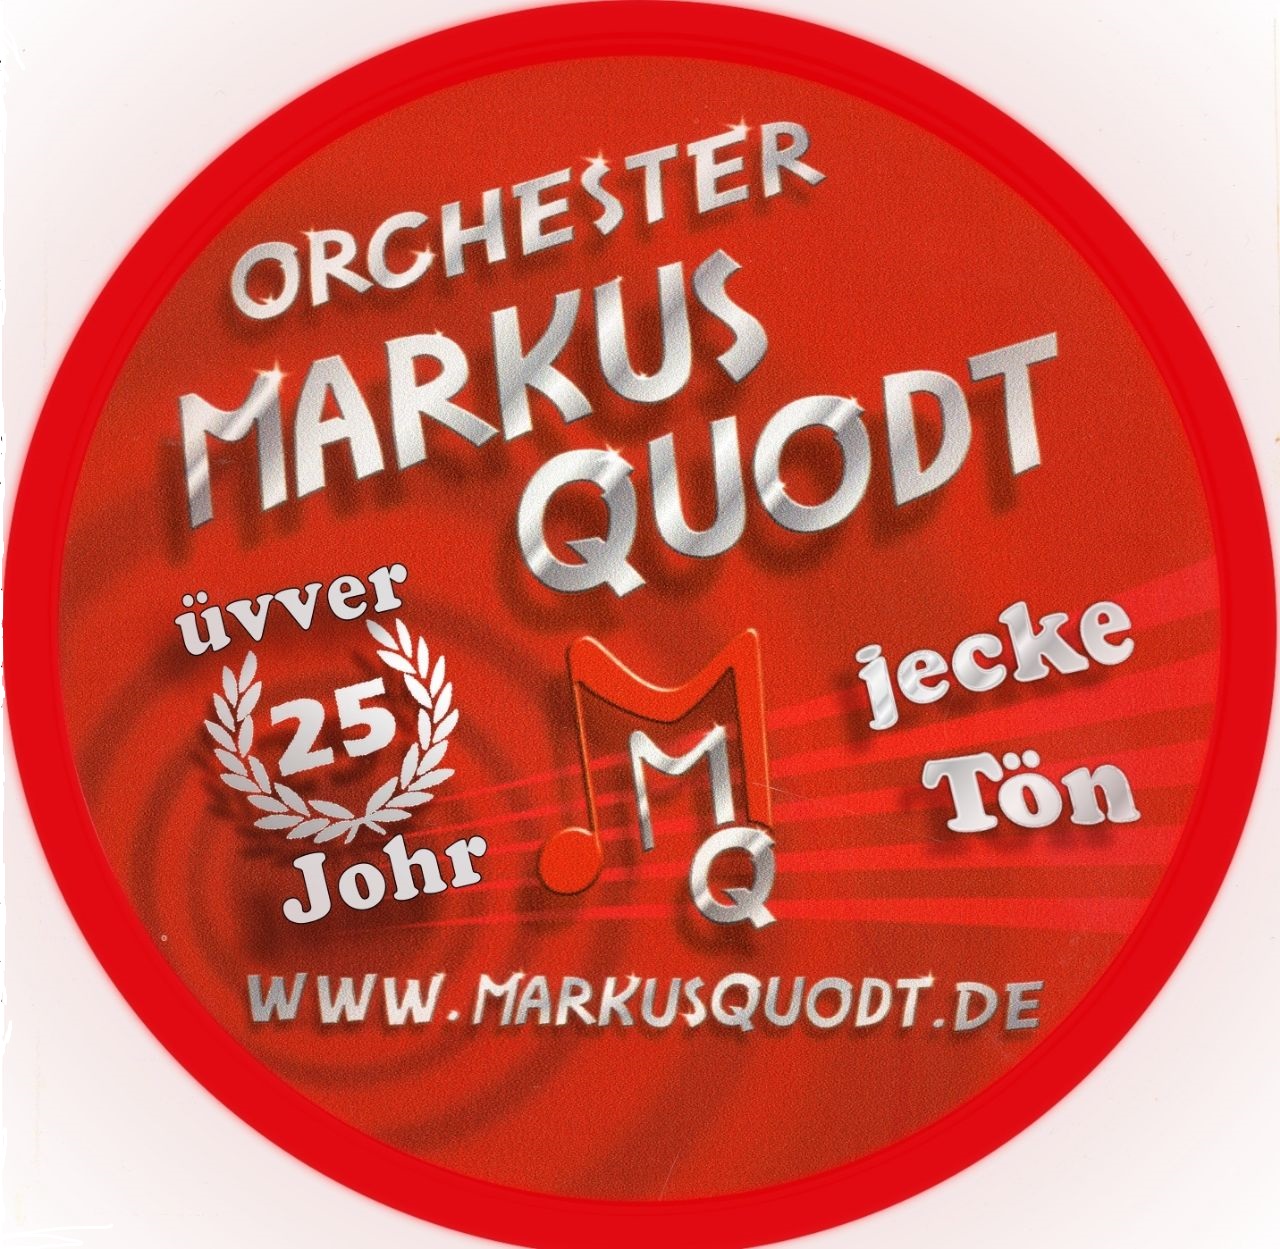 (c) Orchestermarkusquodt.de